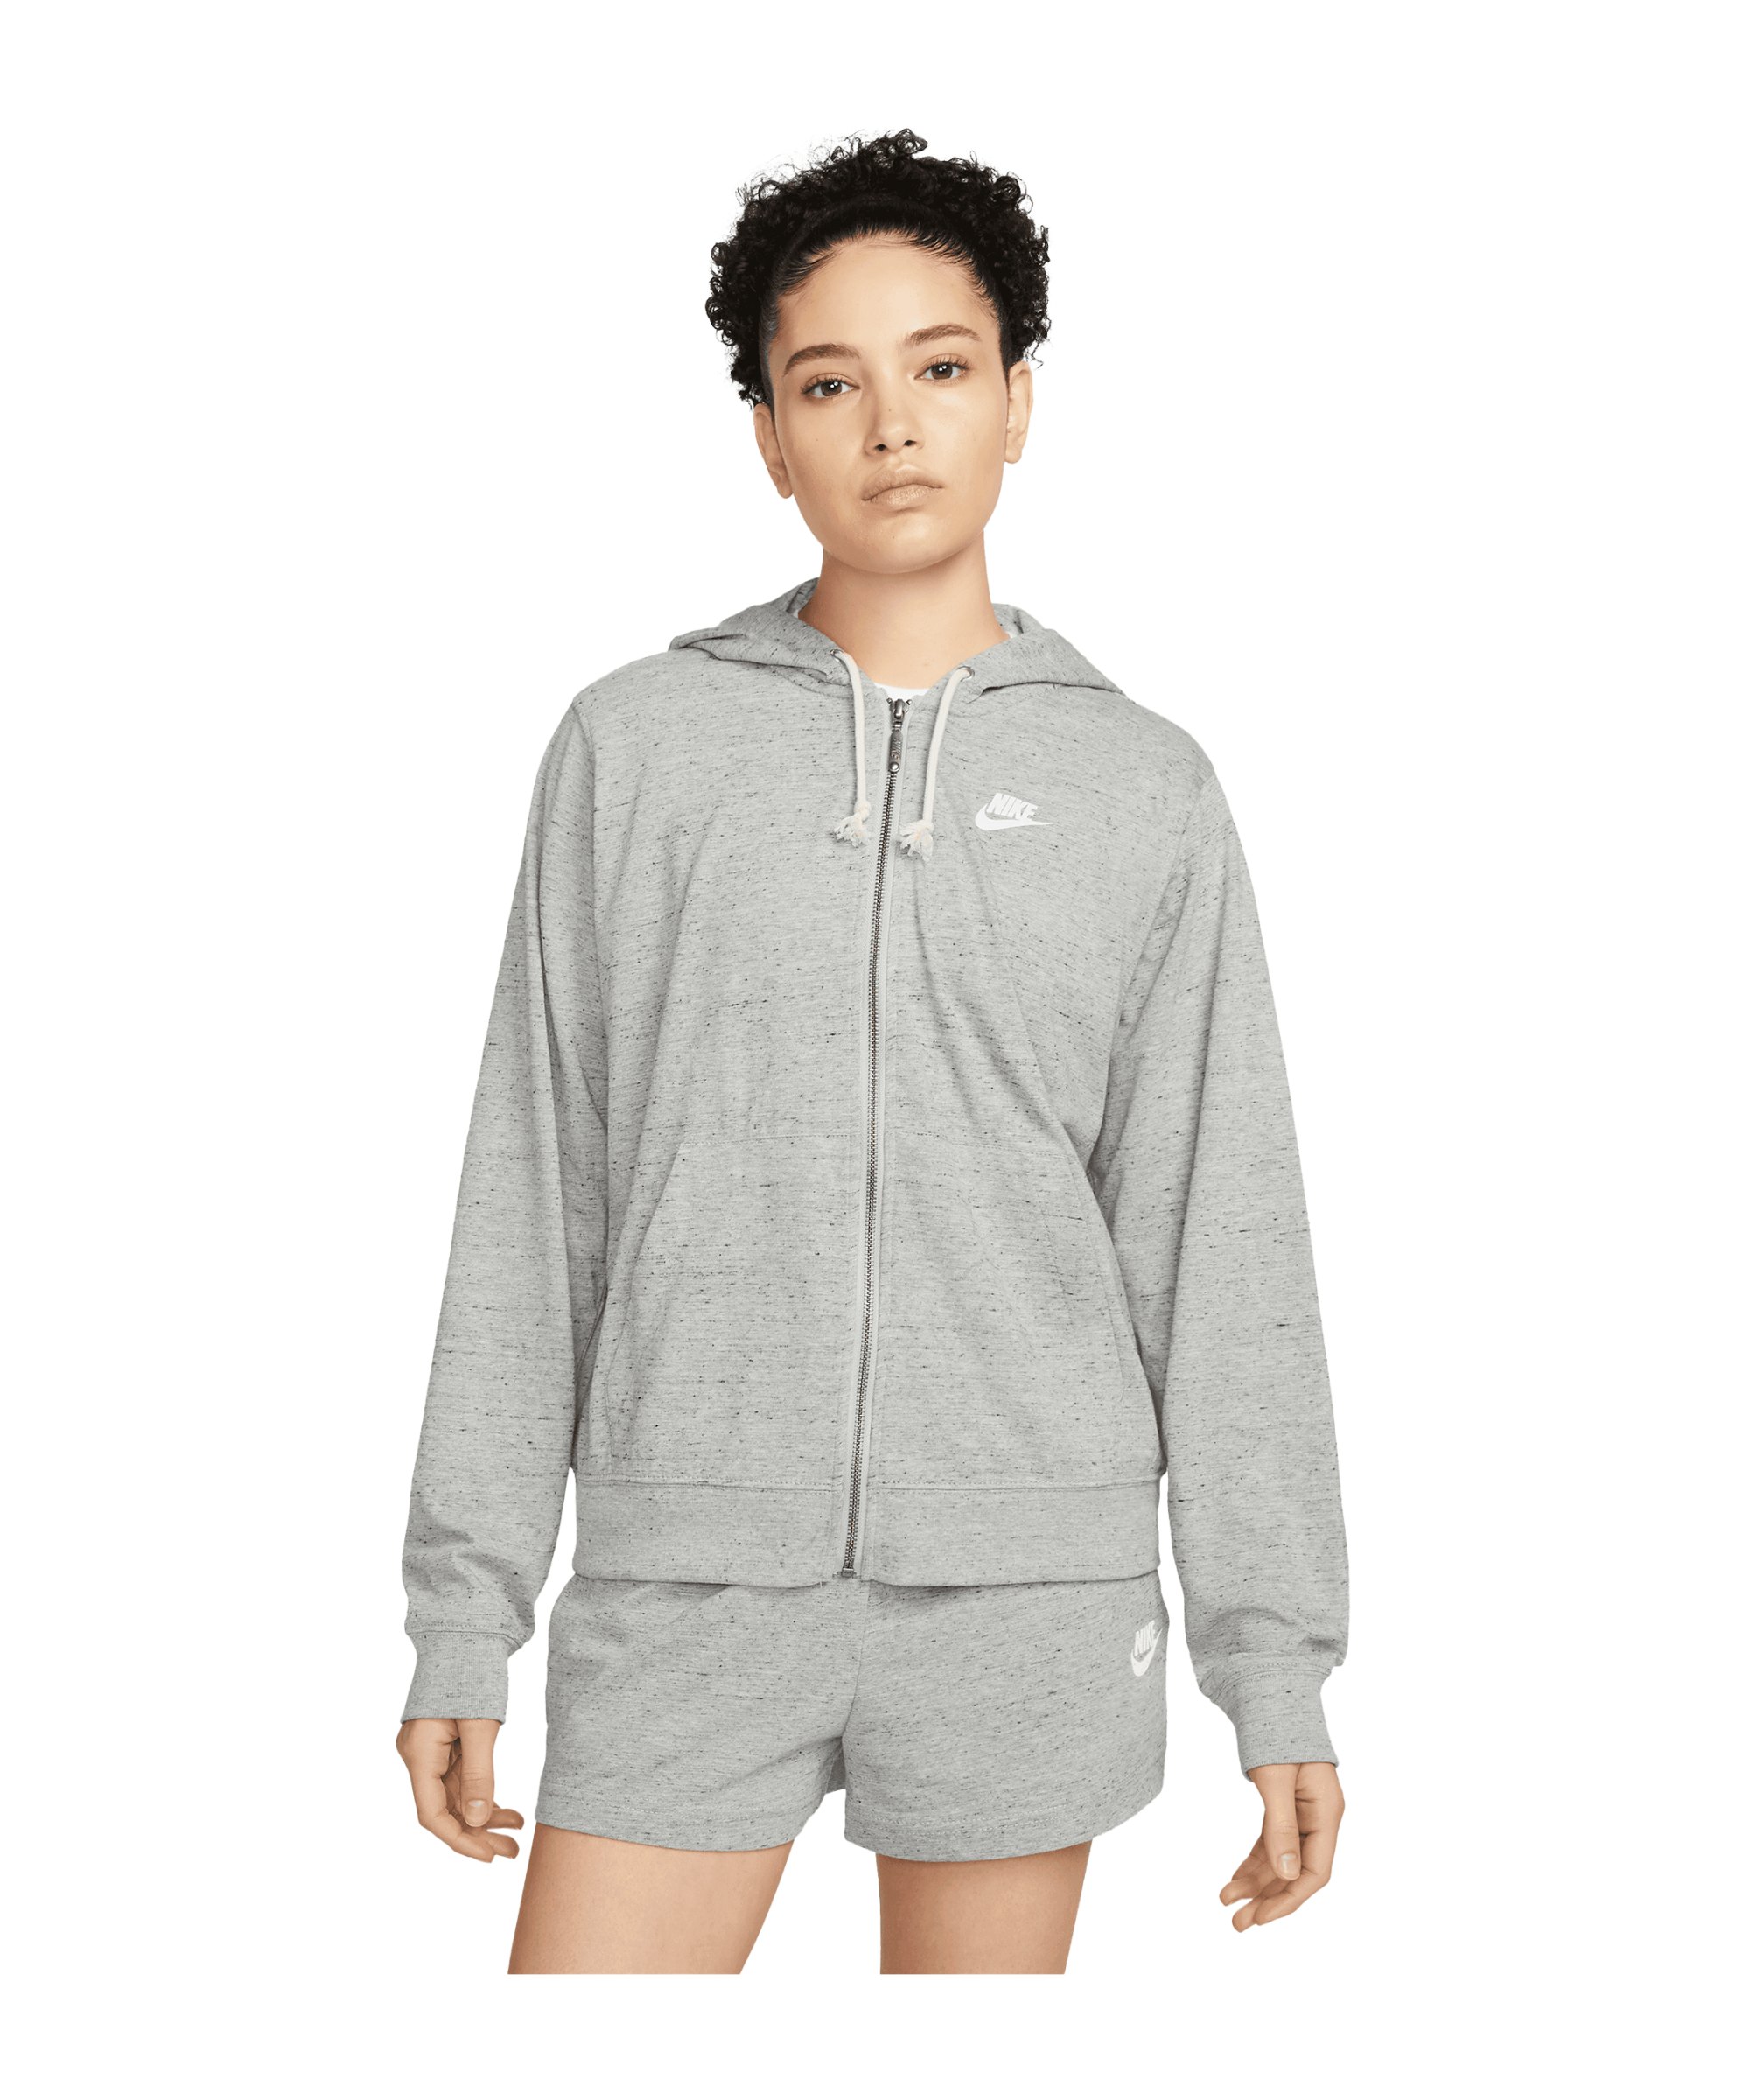 Nike Gym Vintage Jacke Damen Grau Weiss F063 - grau